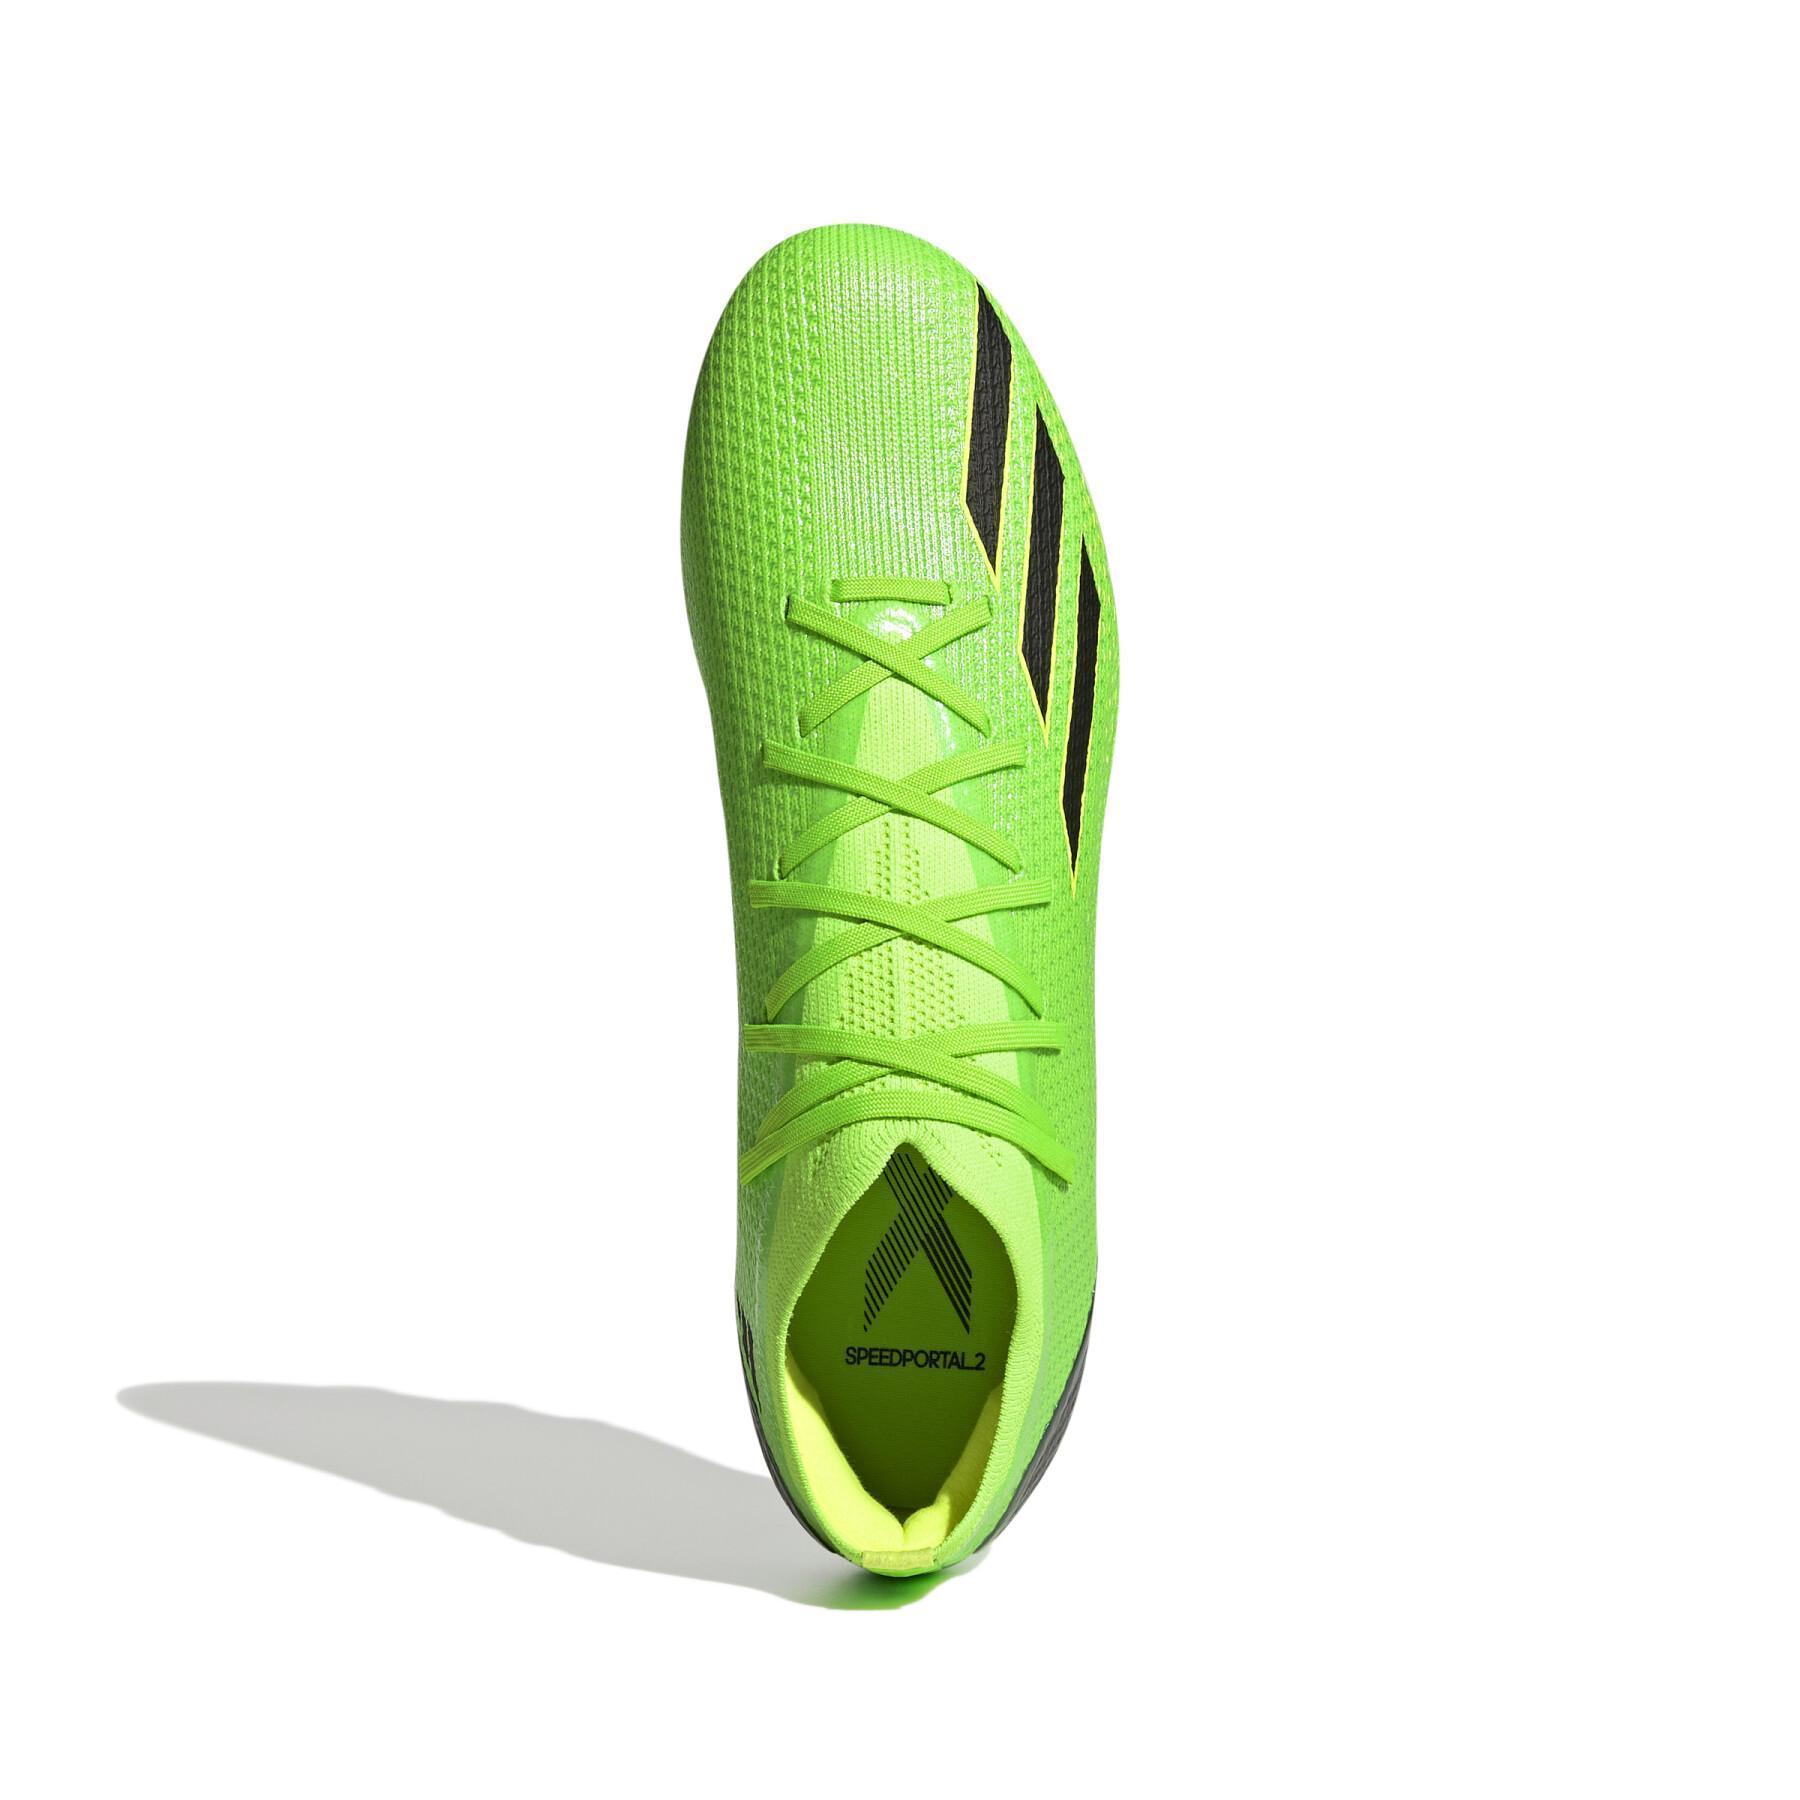 Fußballschuhe adidas X Speedportal.2 MG - Game Data Pack